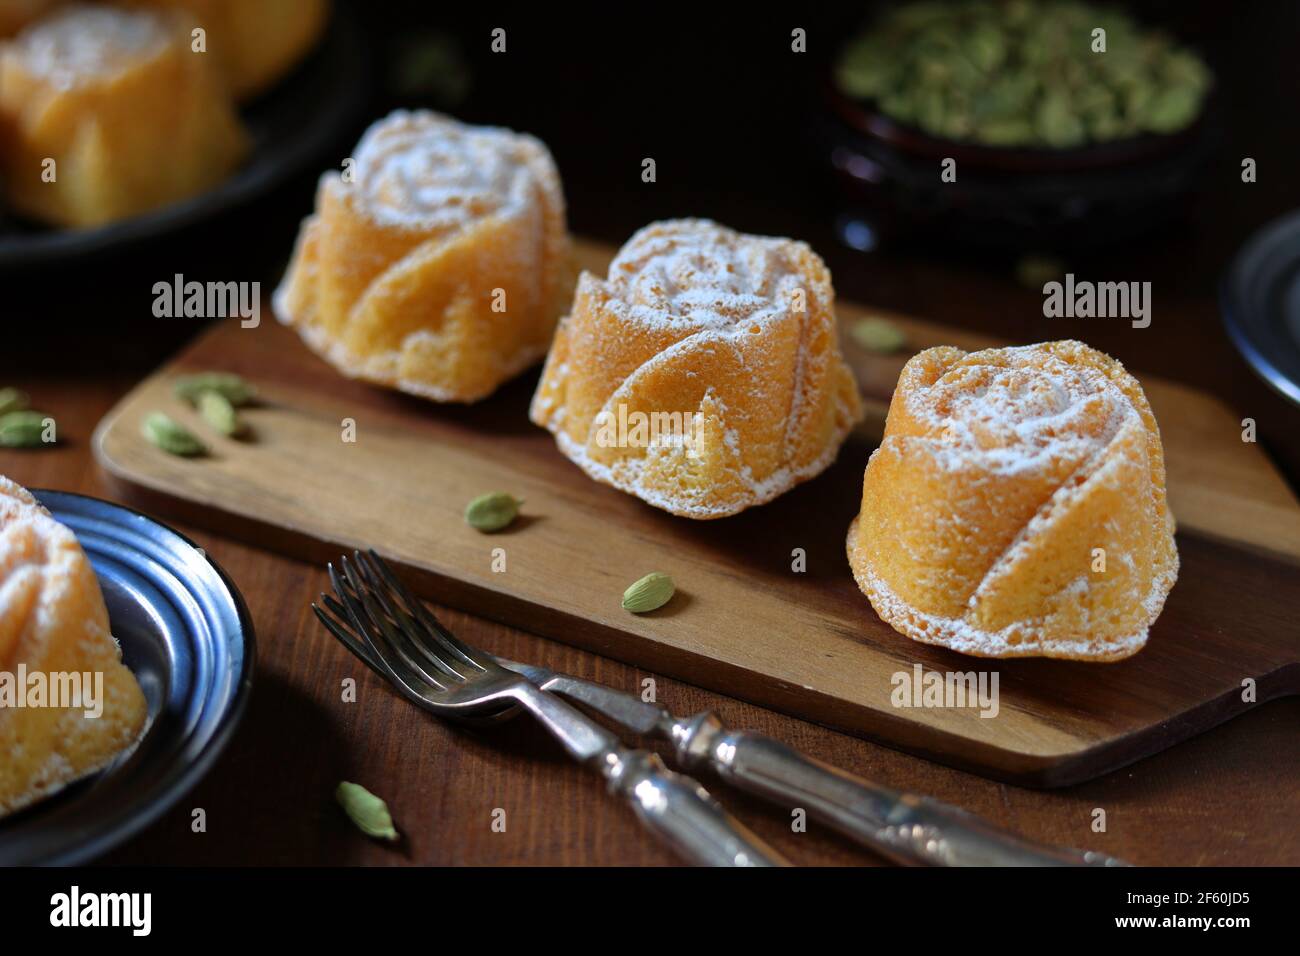 Petits gâteaux de Savoie faits maison fraîchement cuits à la cardamome en forme de rose avec dosettes de cardamome Banque D'Images